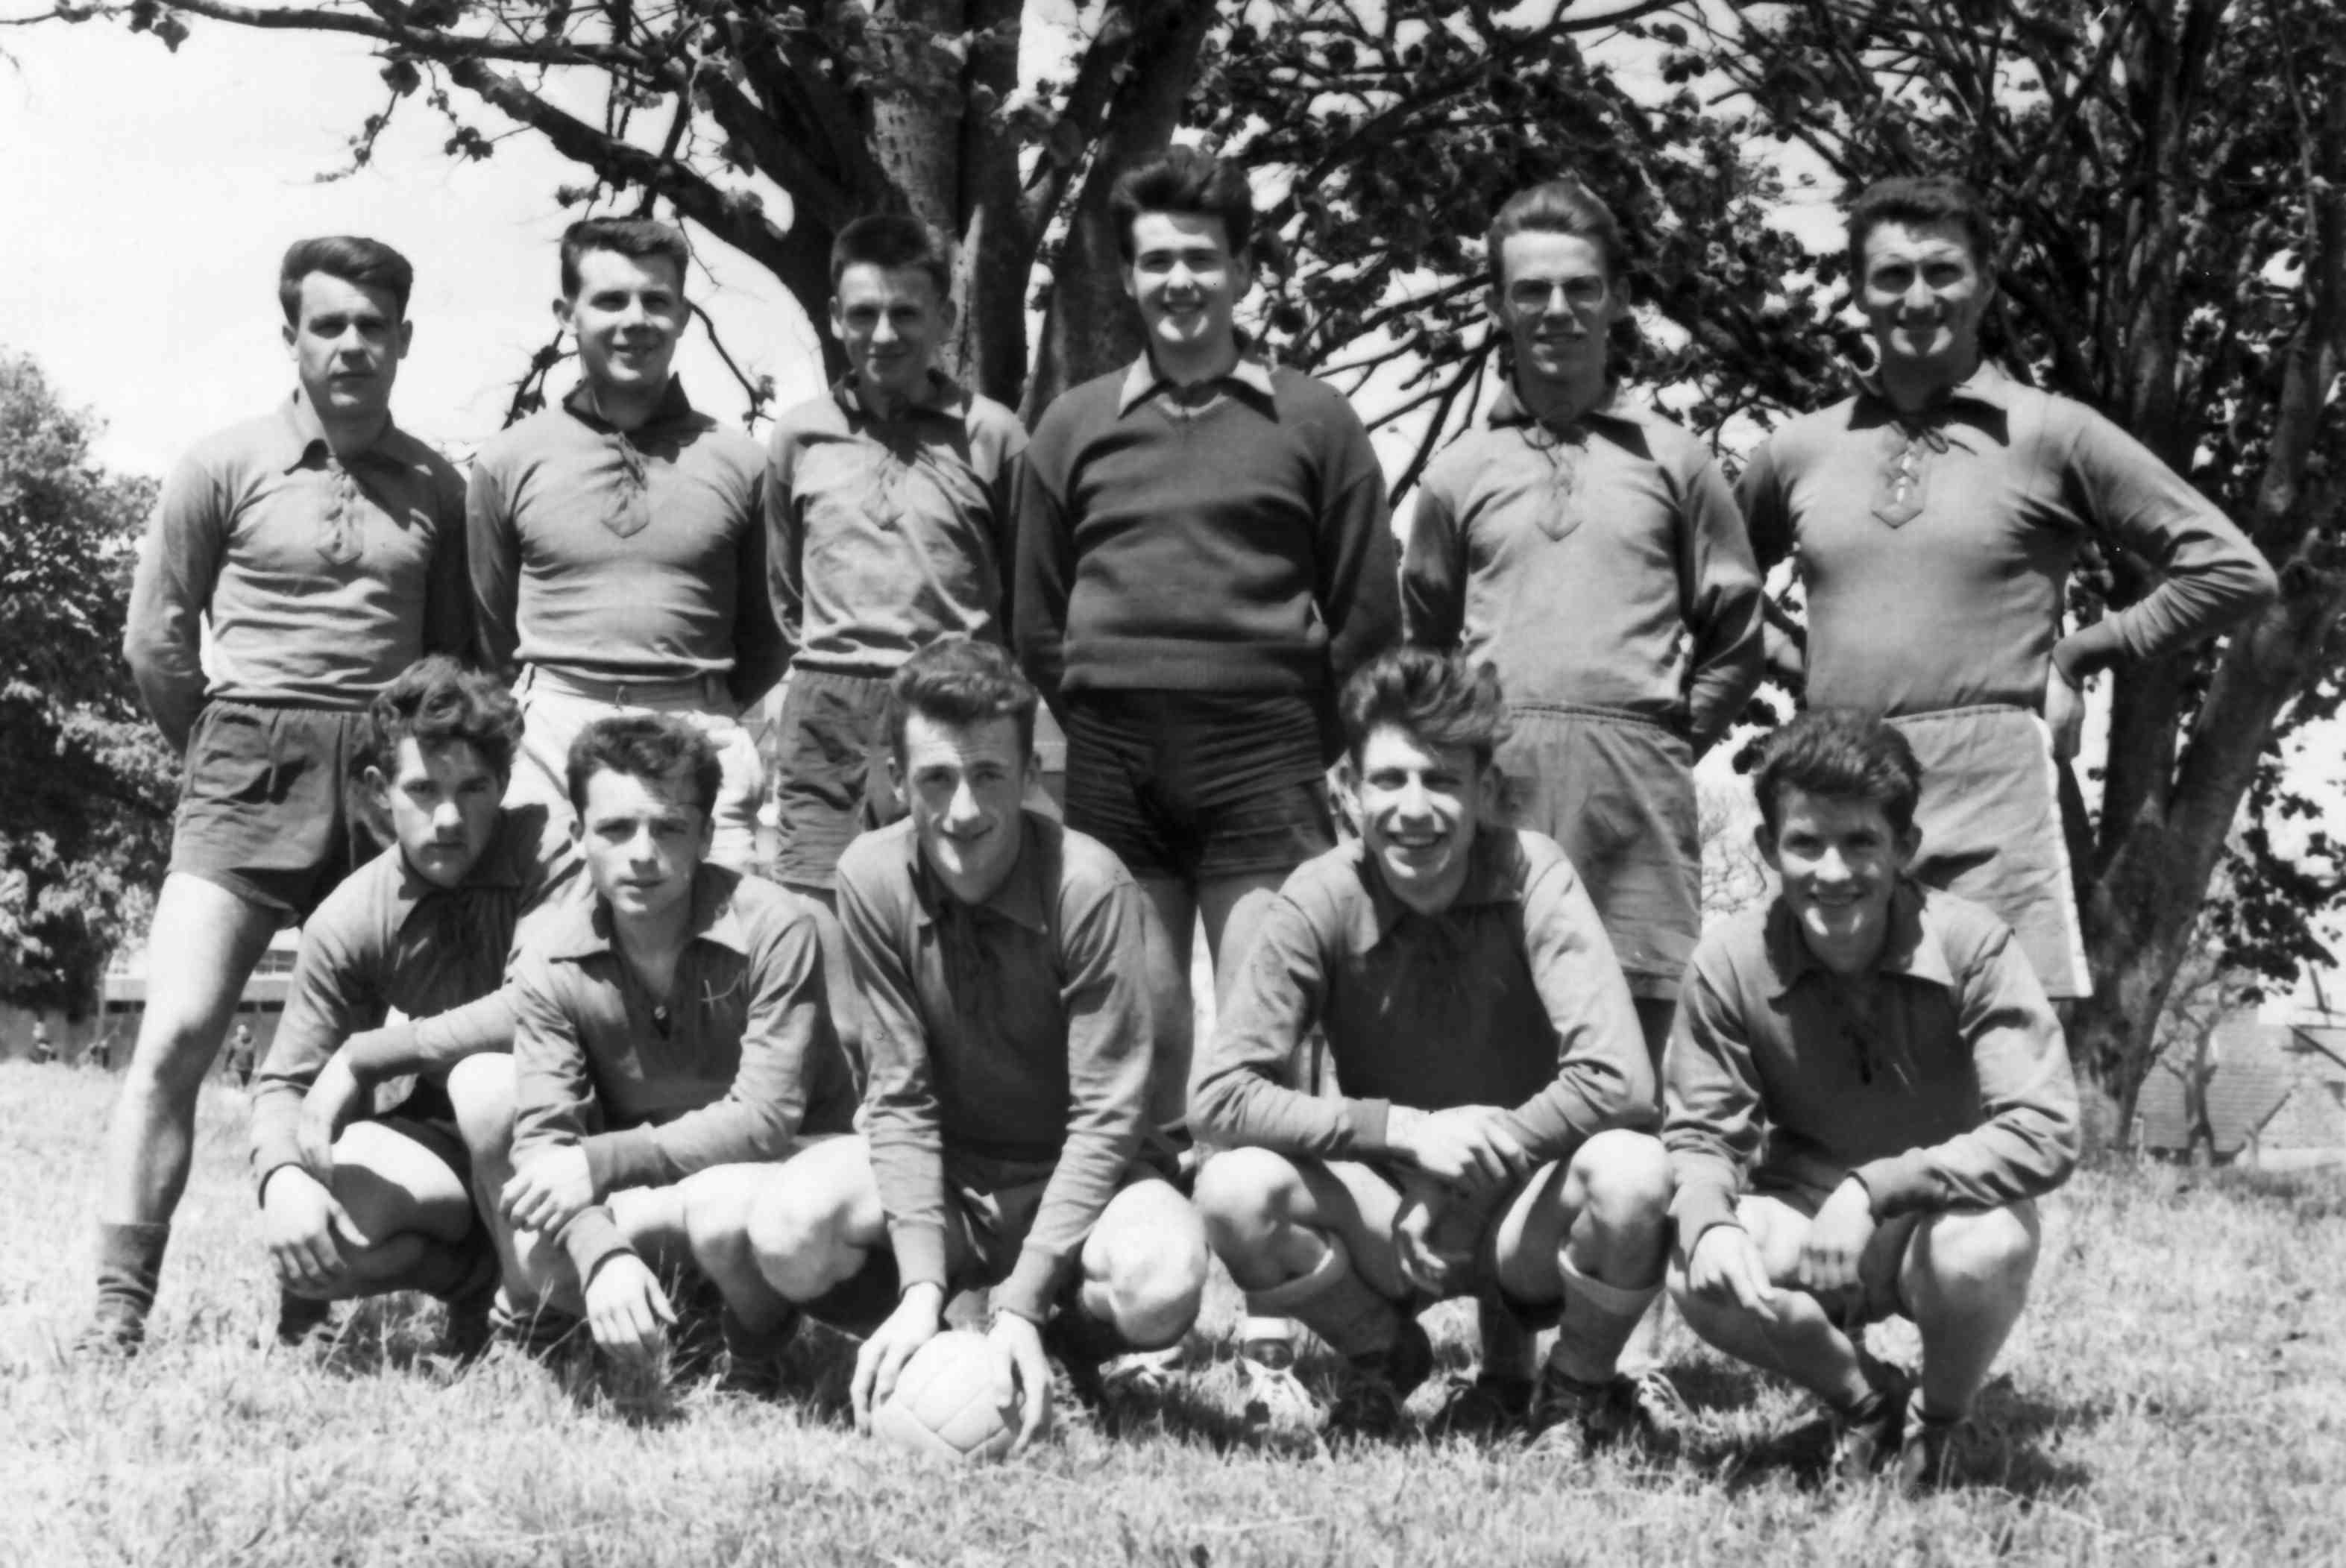 Equipe de foot, en 1958